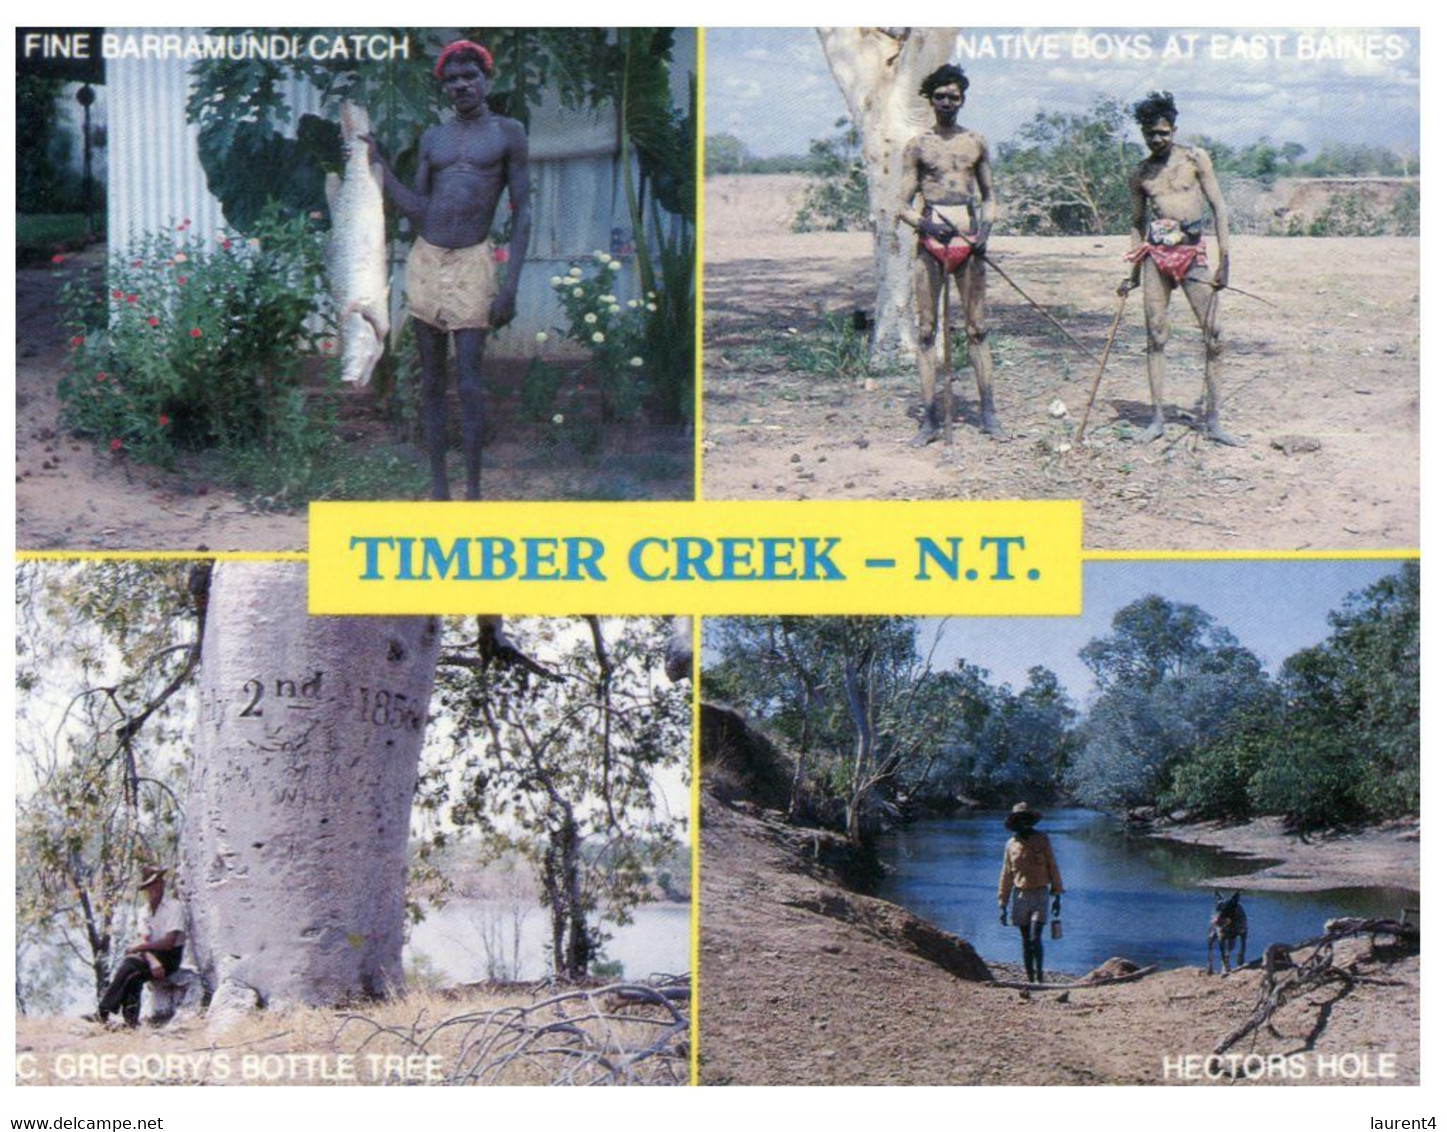 (P 12) Australia - NT - Timber Creek (aborigines) - Aborigines